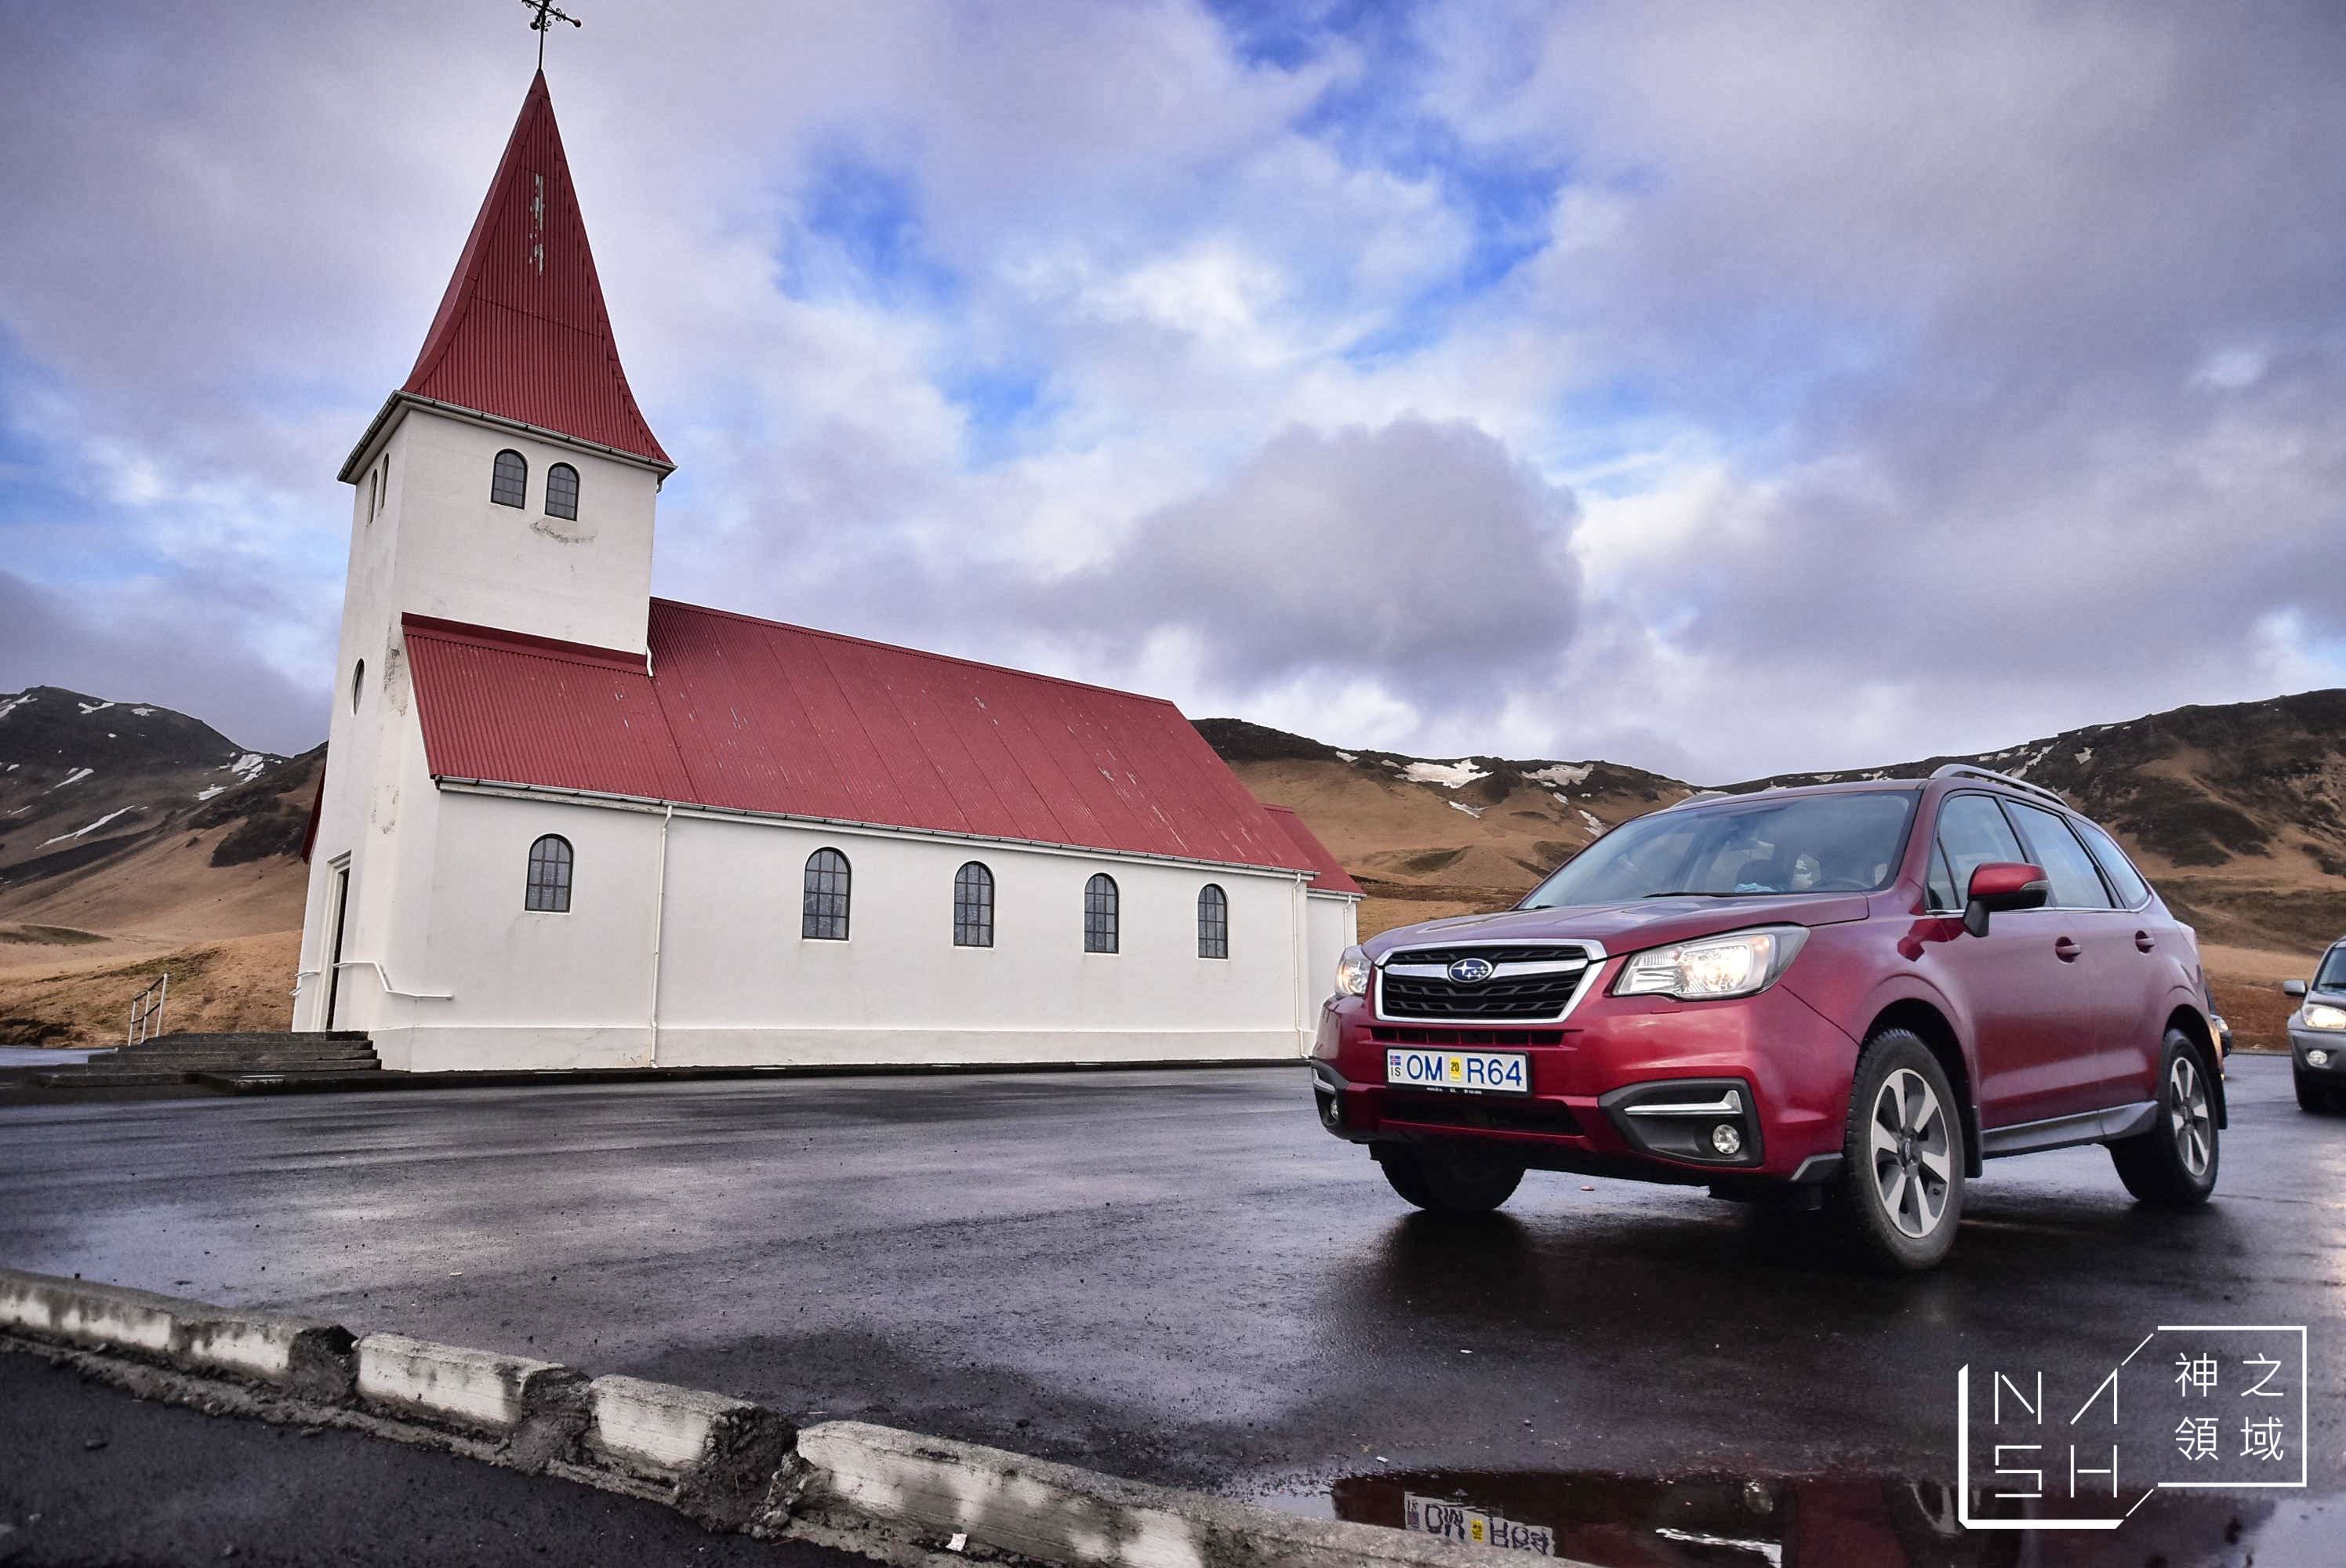 冰島自助景點推薦,維克教堂,vik church,Vik i Myrdal Church,冰島自由行環島景點推薦 @Nash，神之領域